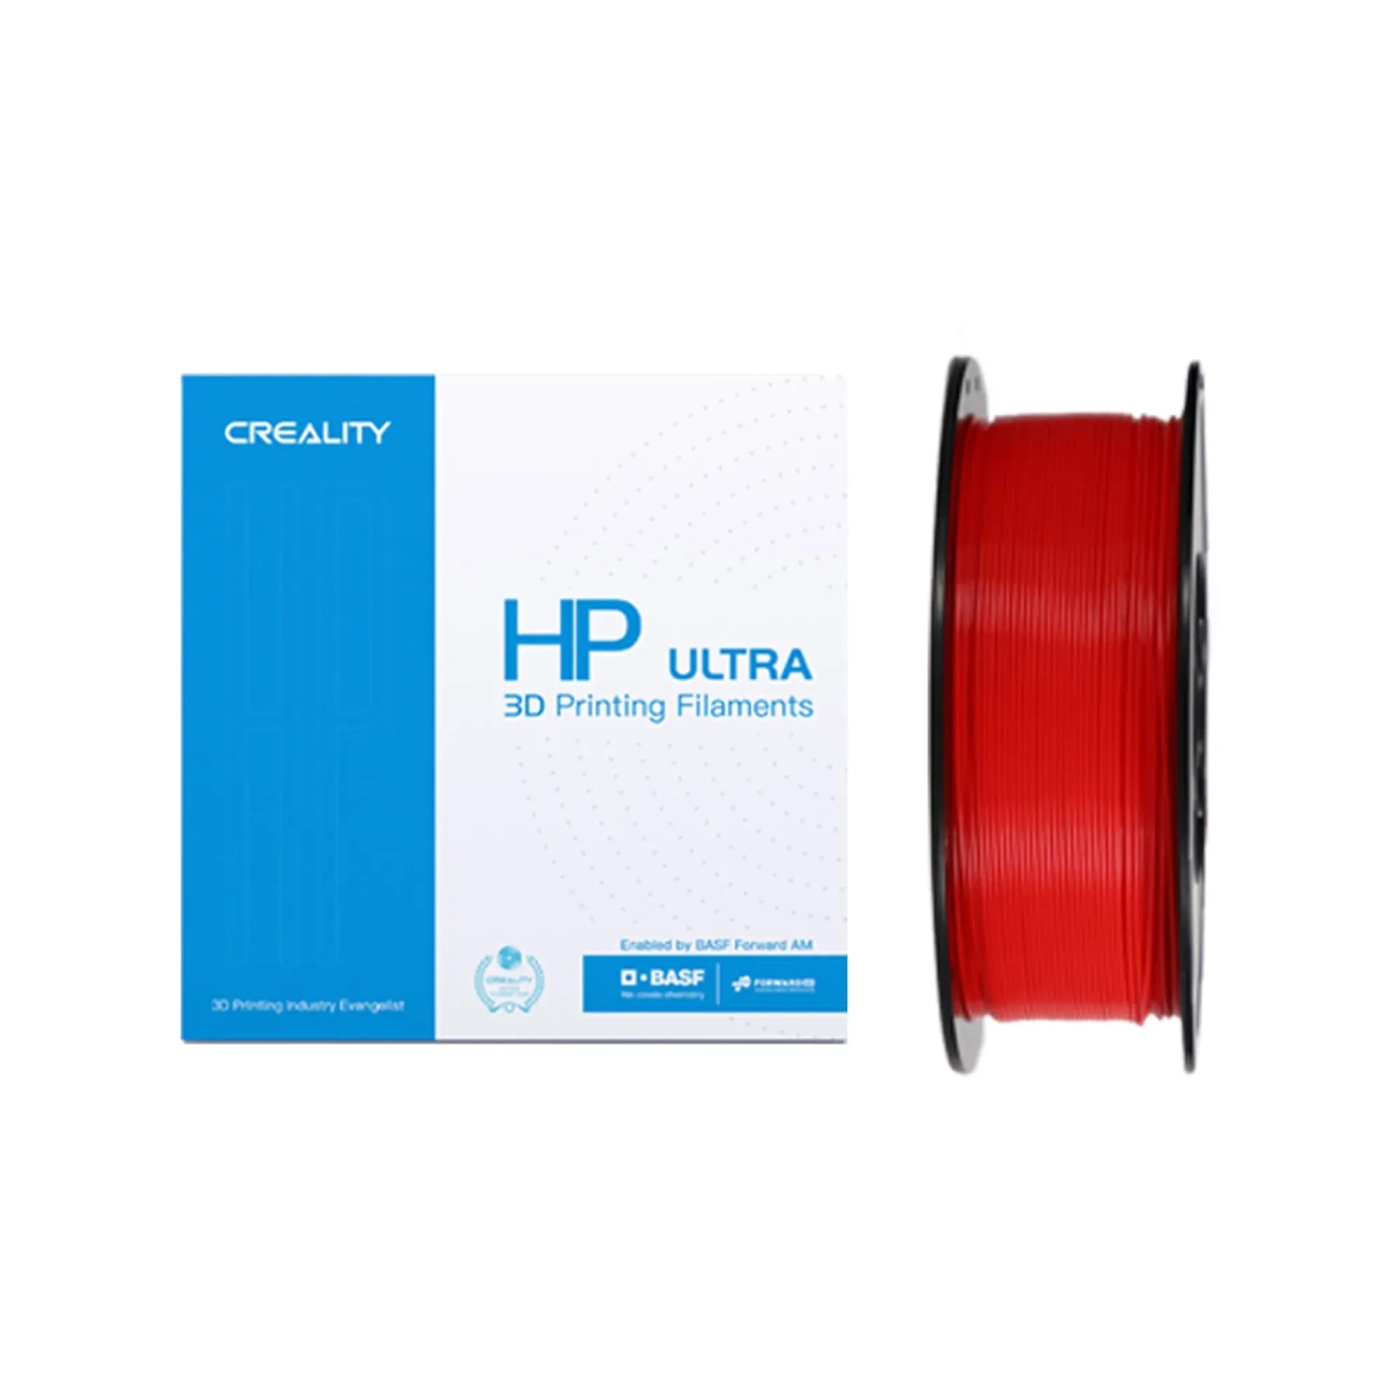 Купить HP ULTRA PLA Filament (пластик) для 3D принтера CREALITY 1кг, 1.75мм, красный - фото 1